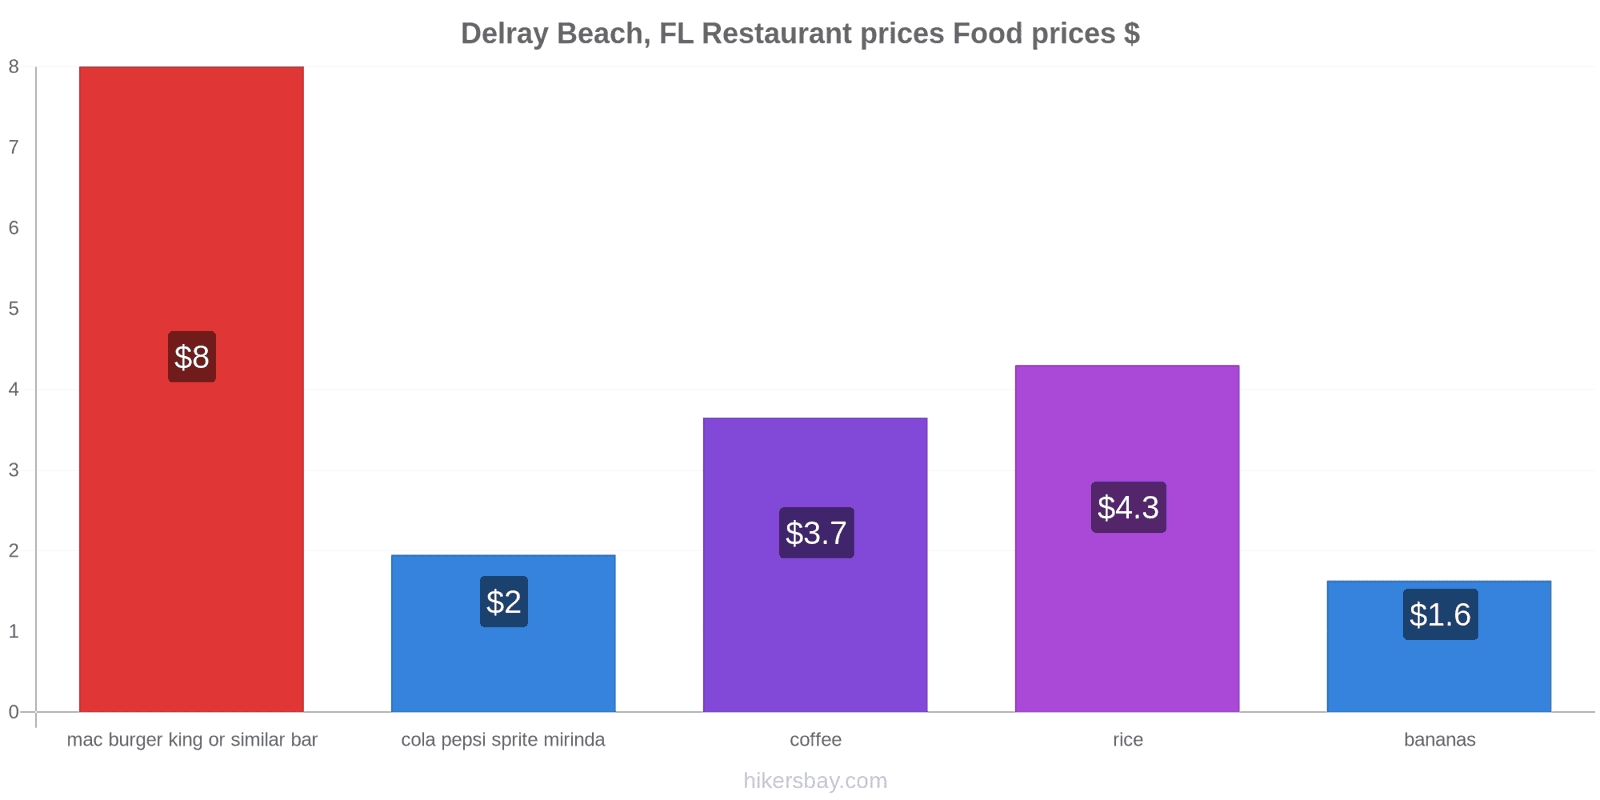 Delray Beach, FL price changes hikersbay.com